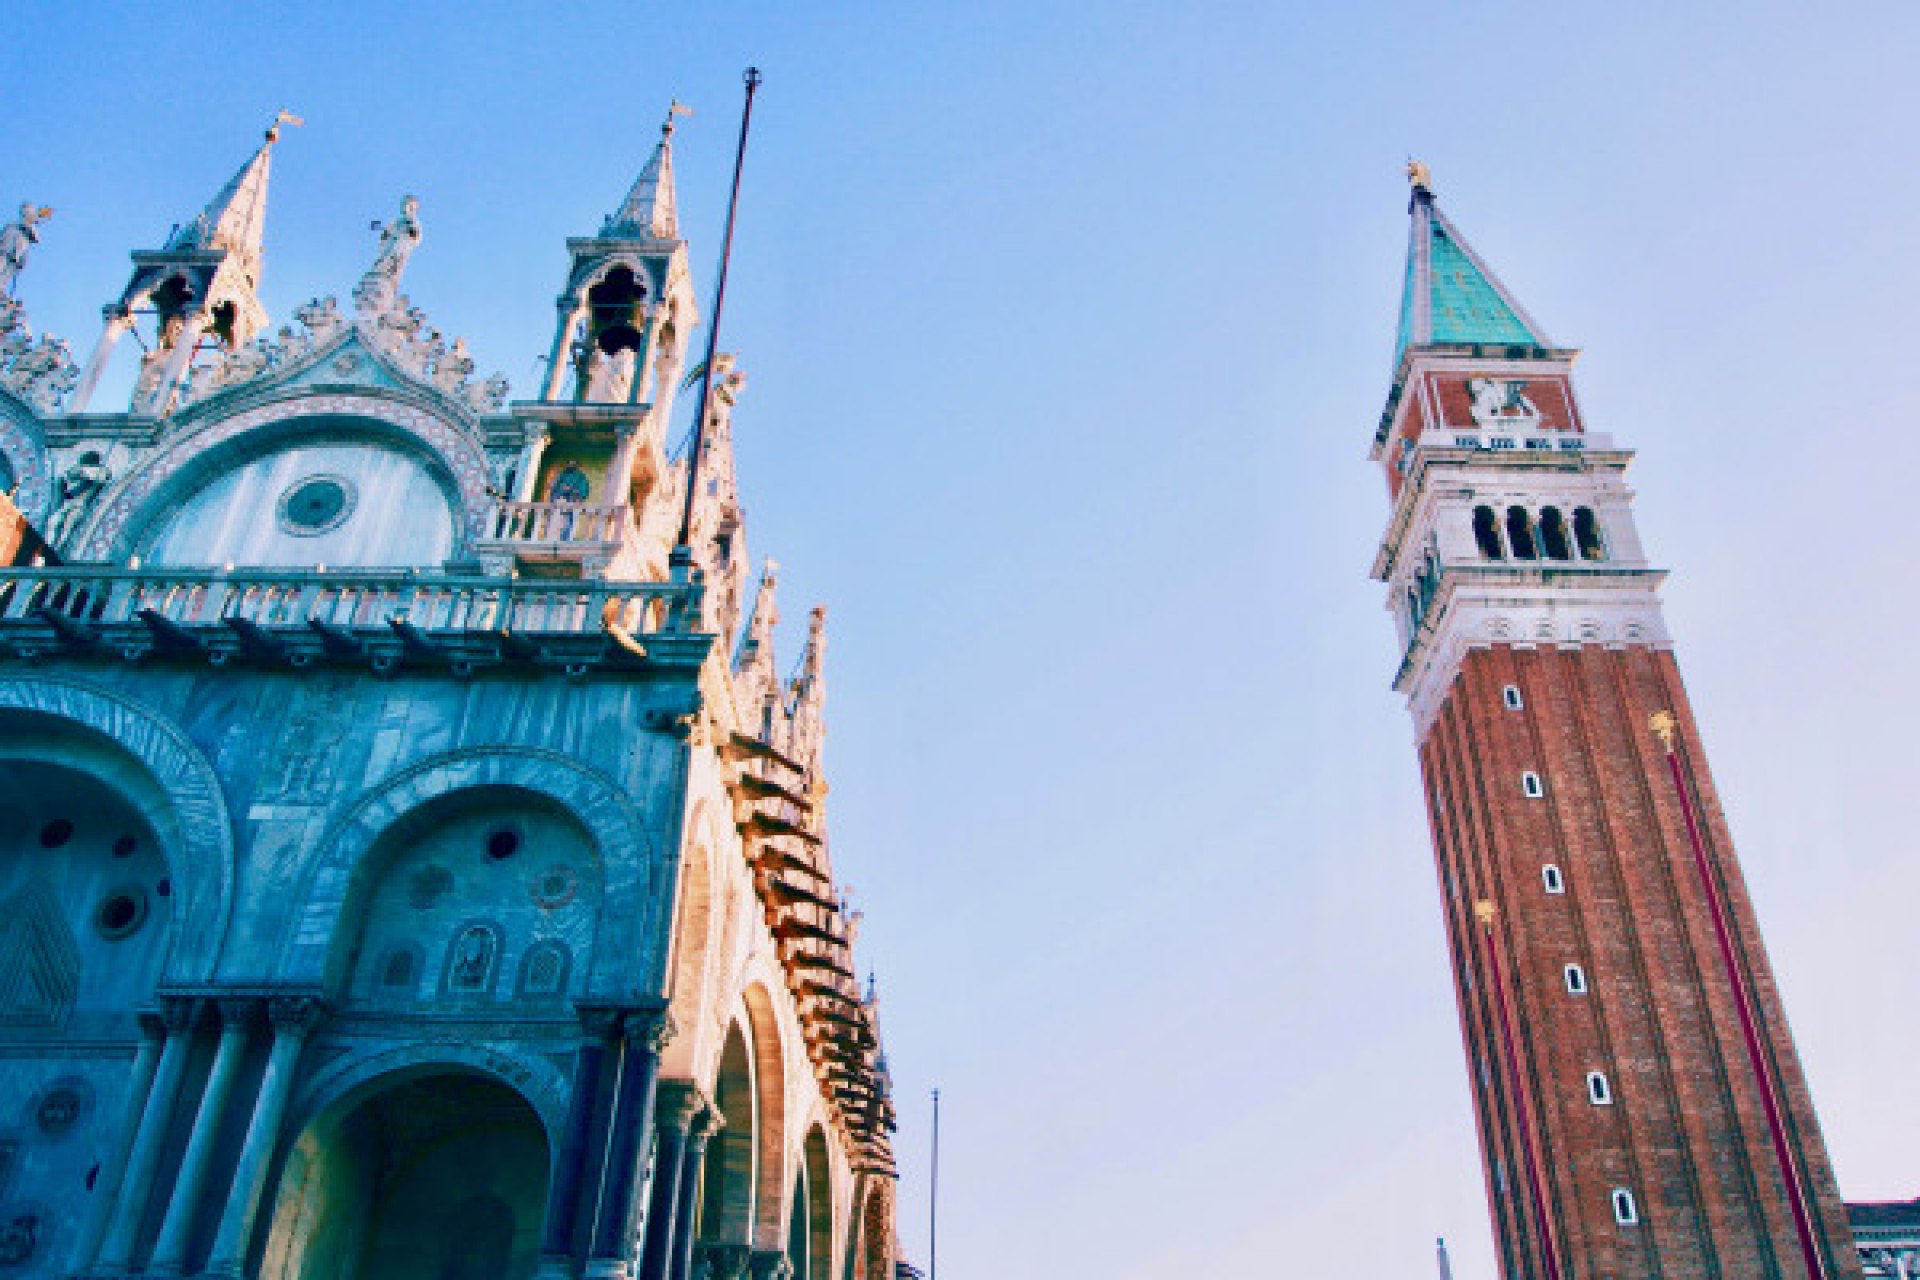 Venise byzantine : visite à pied et la basilique Saint-Marc